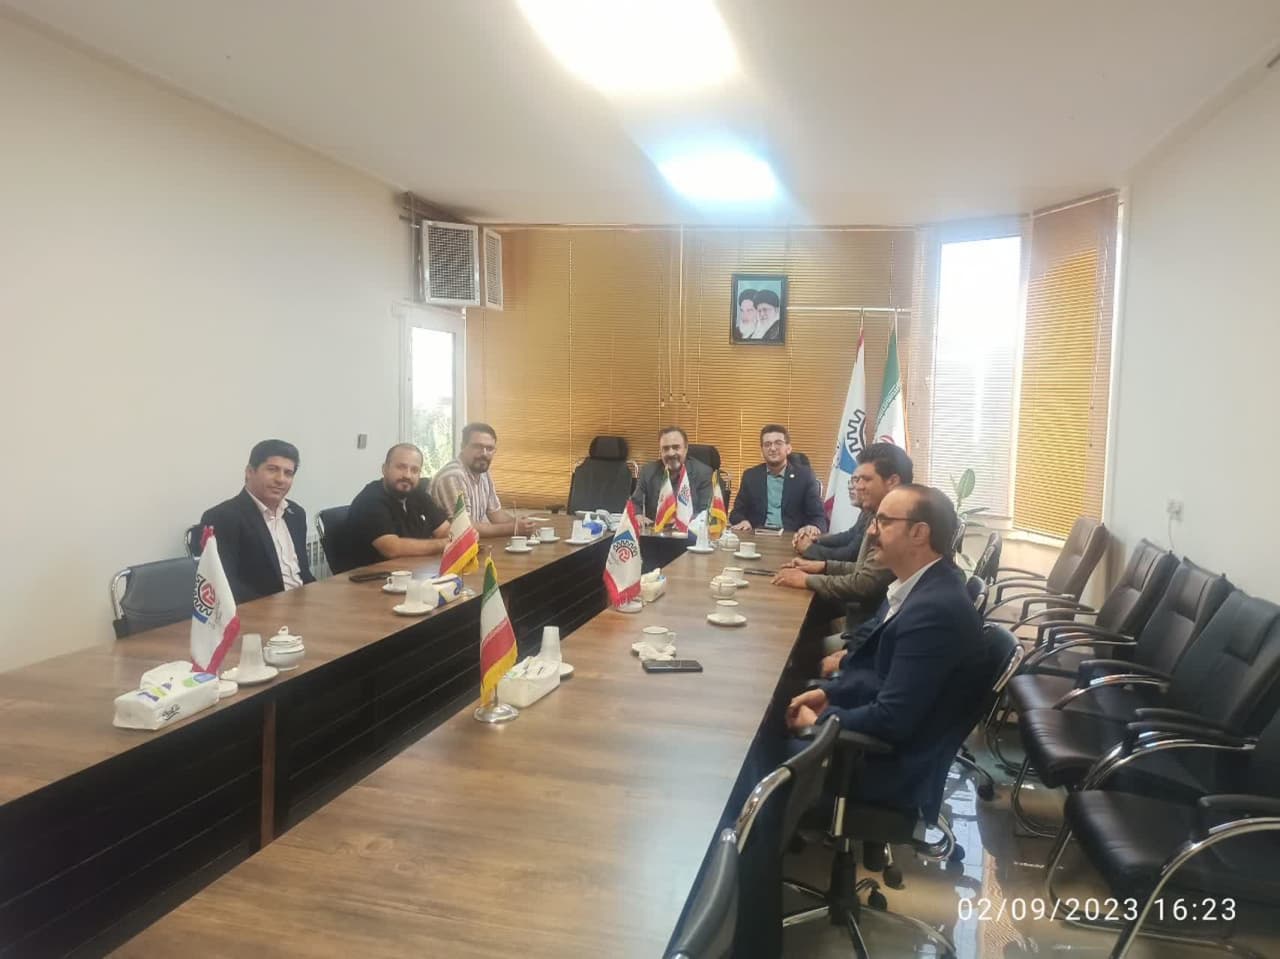 جلسه هیئت مدیره انجمن آسانسور و تعدادی از اعضا ی استان با رئیس اتحادیه کشوری آسانسور 